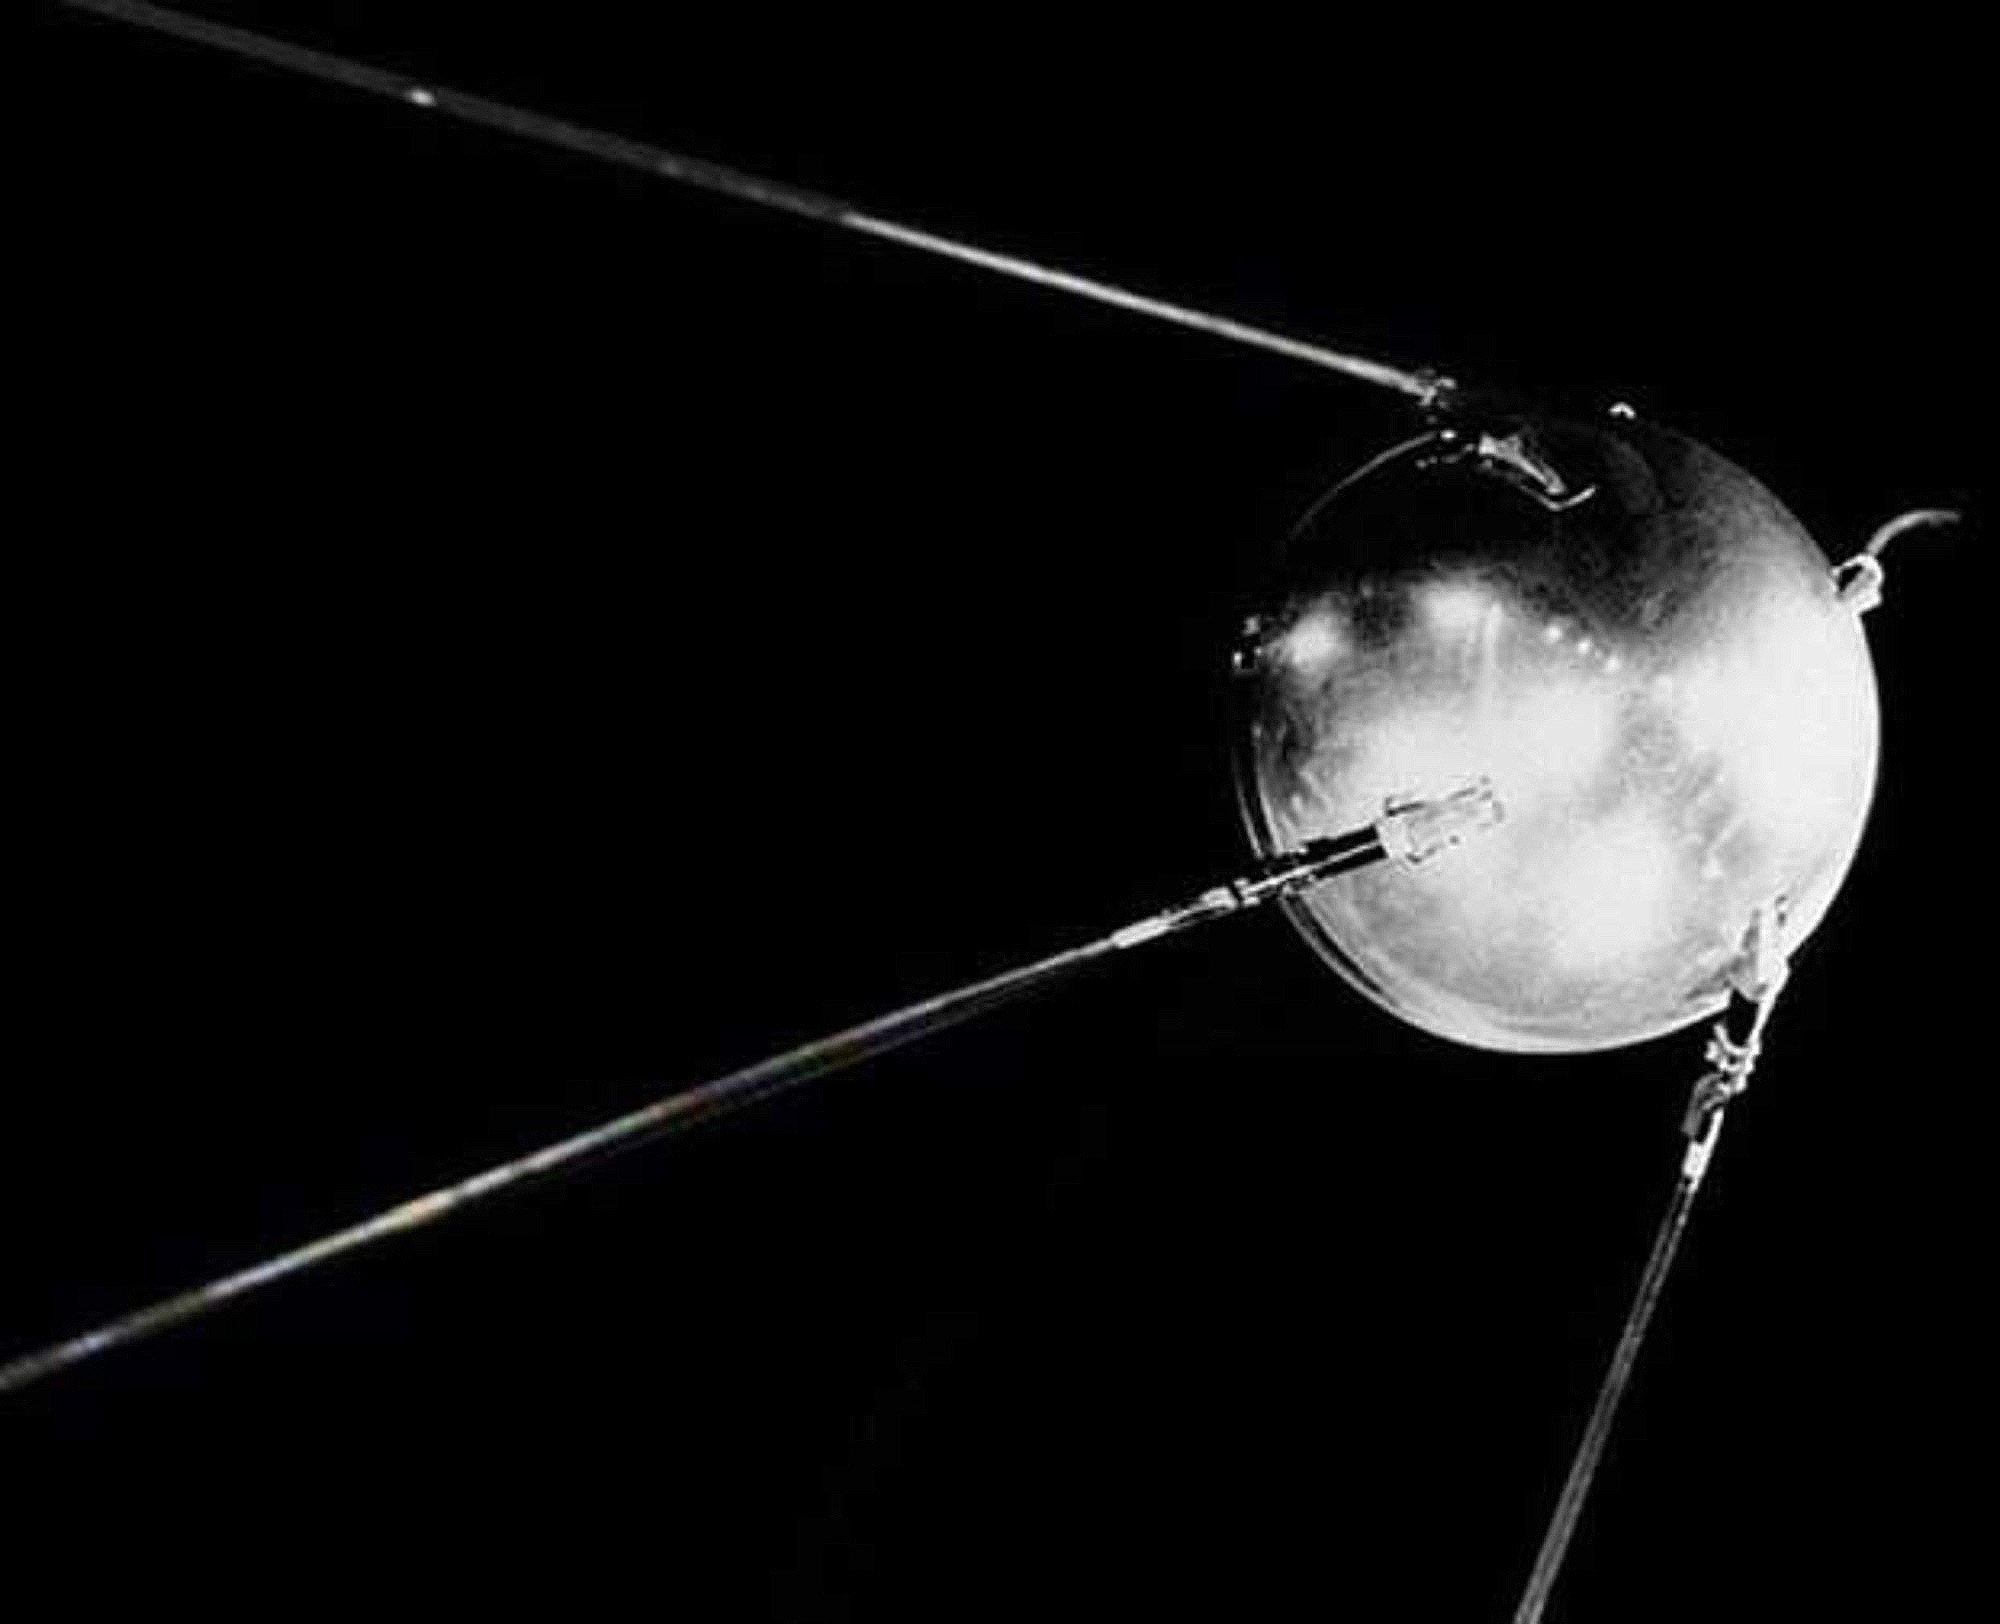 Название первого искусственного спутника. Спутник 1 первый искусственный Спутник земли. Первый искусственный Спутник земли 1957. Спутник 1 СССР. Искусственный Спутник СССР 1957.